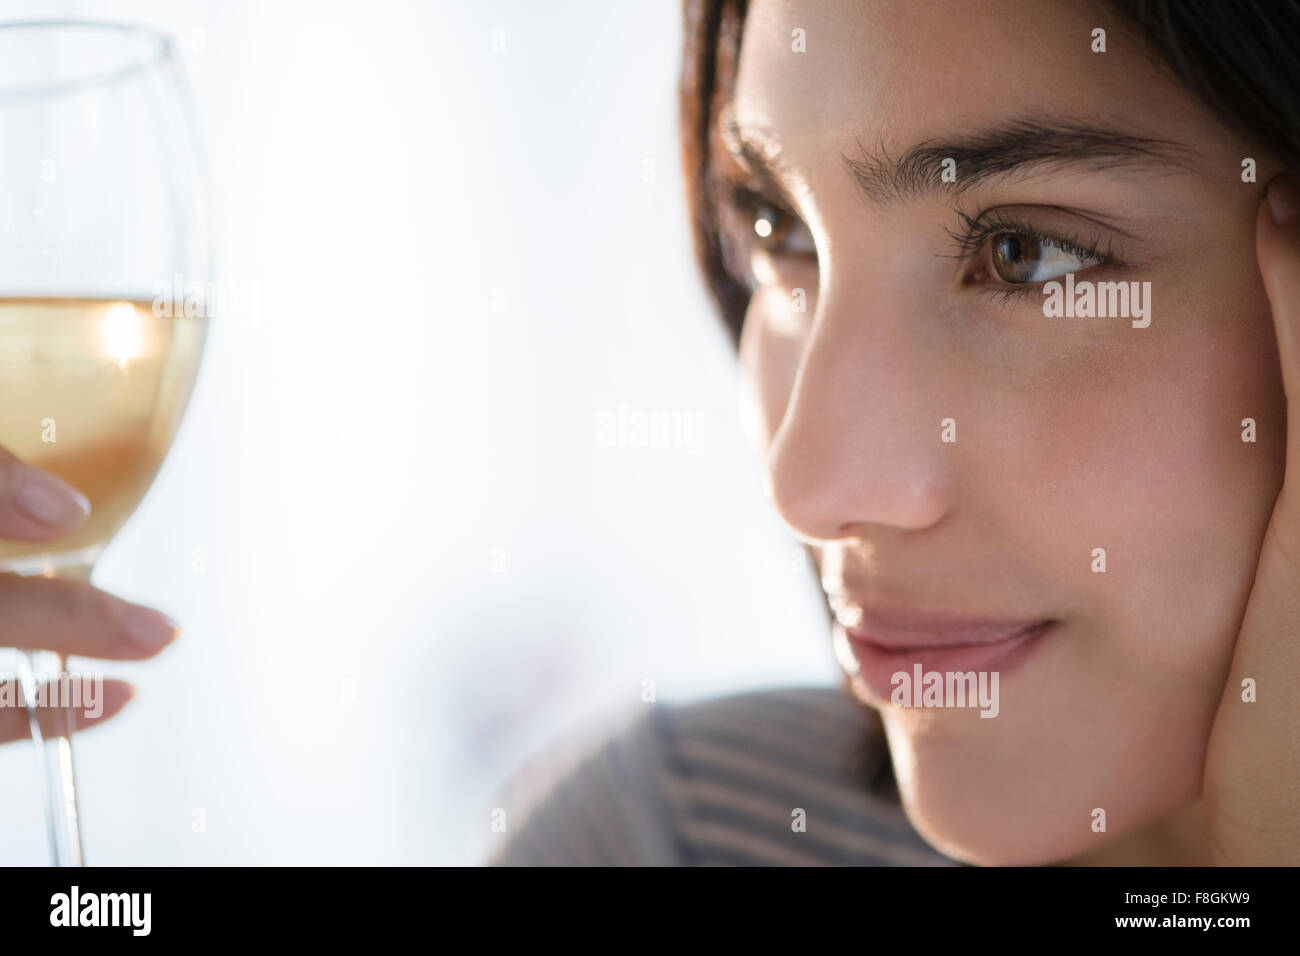 Hispanic woman examining glass of wine Stock Photo